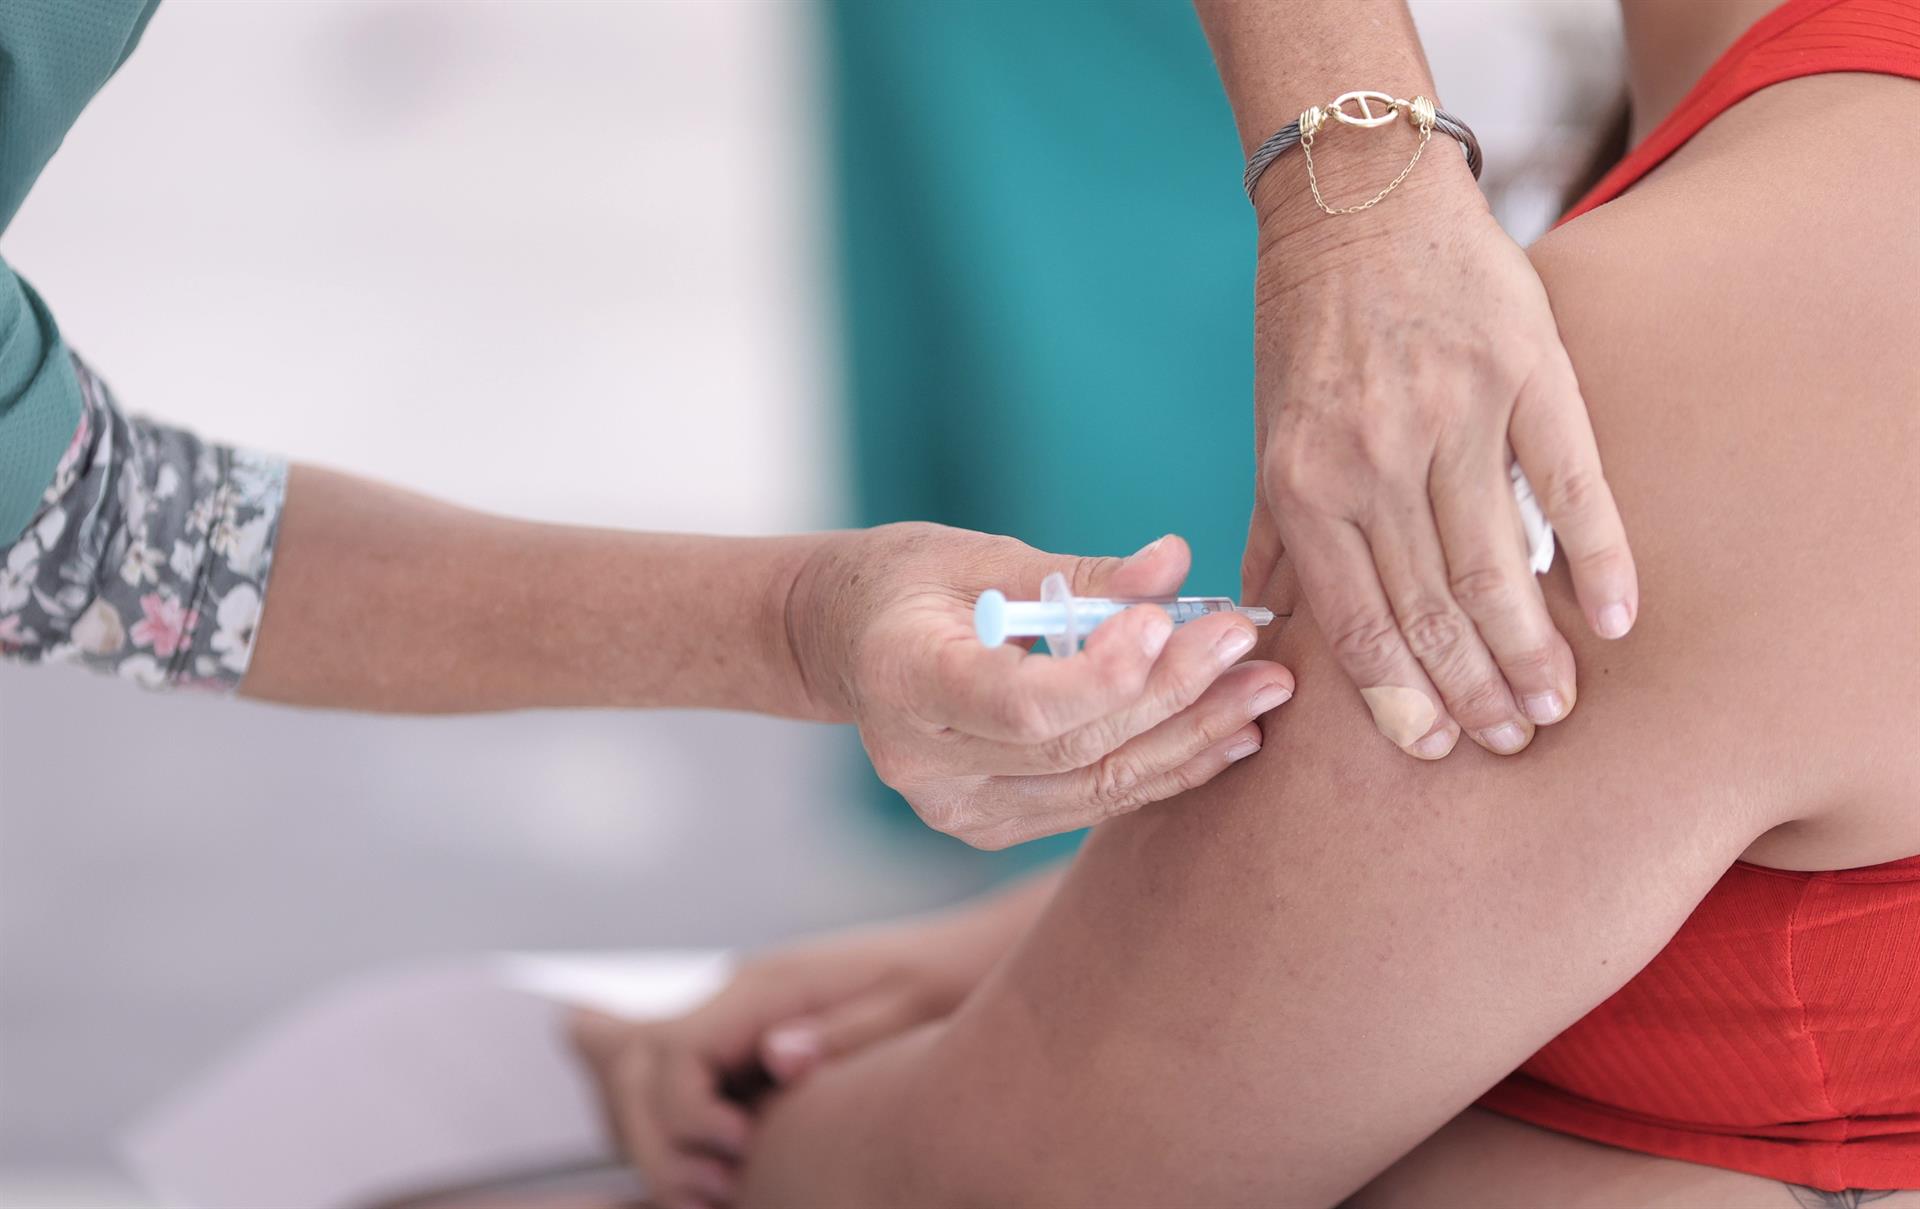 Andalucía abre este jueves la autocita para vacunar contra el Covid a personas de 33 y 32 años